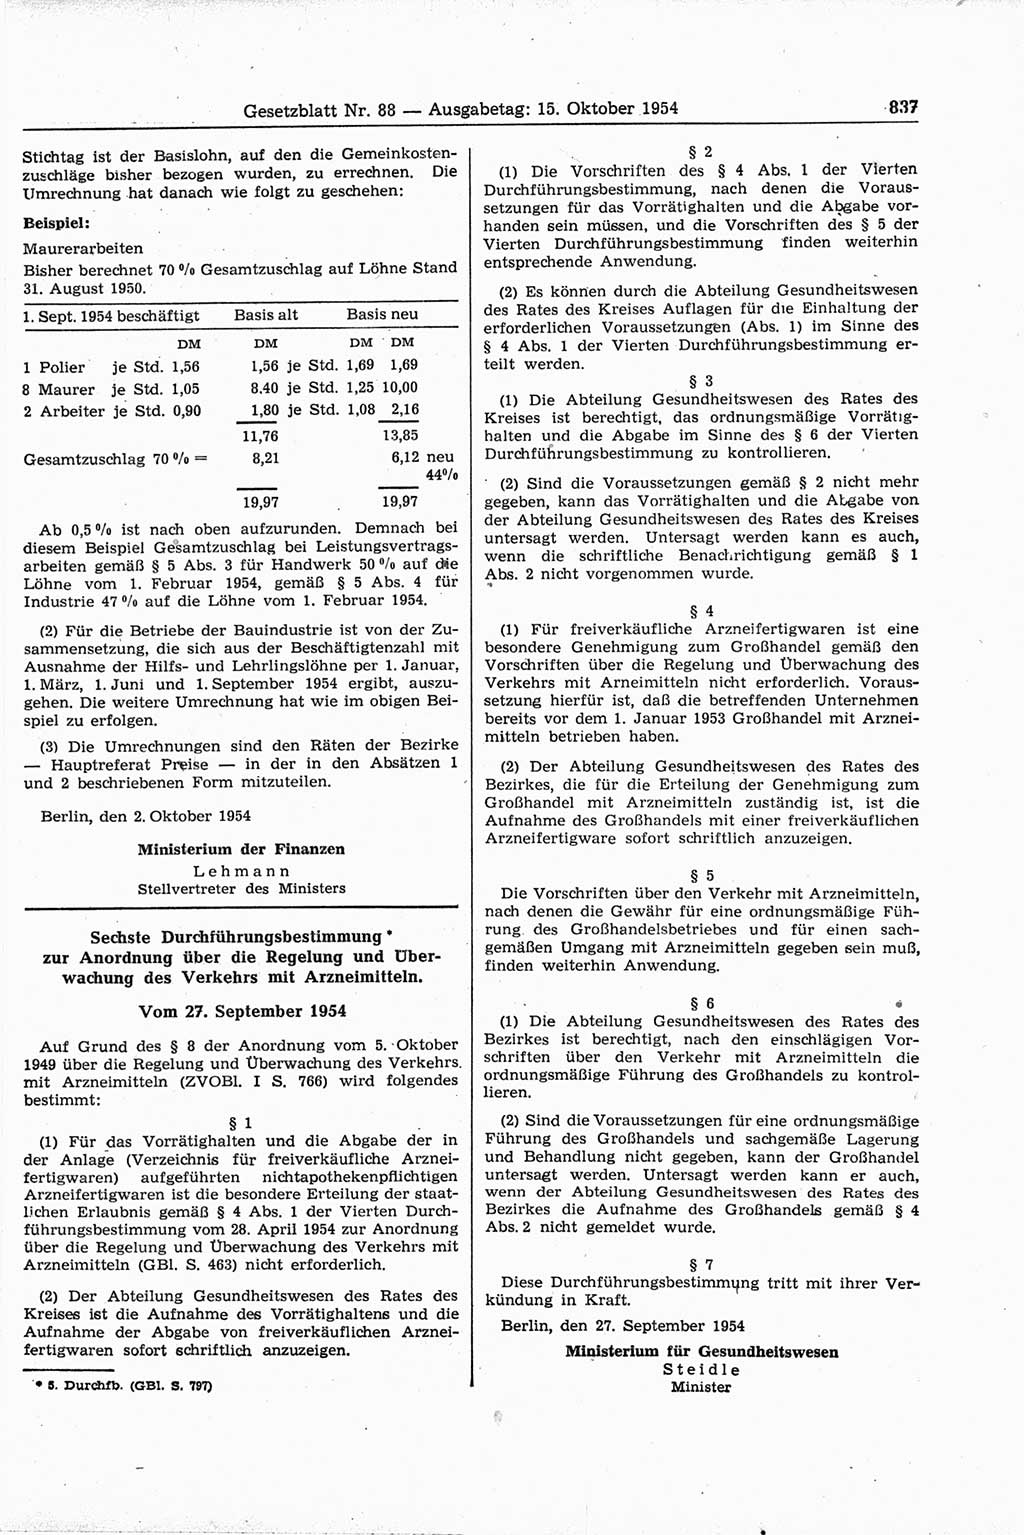 Gesetzblatt (GBl.) der Deutschen Demokratischen Republik (DDR) 1954, Seite 837 (GBl. DDR 1954, S. 837)